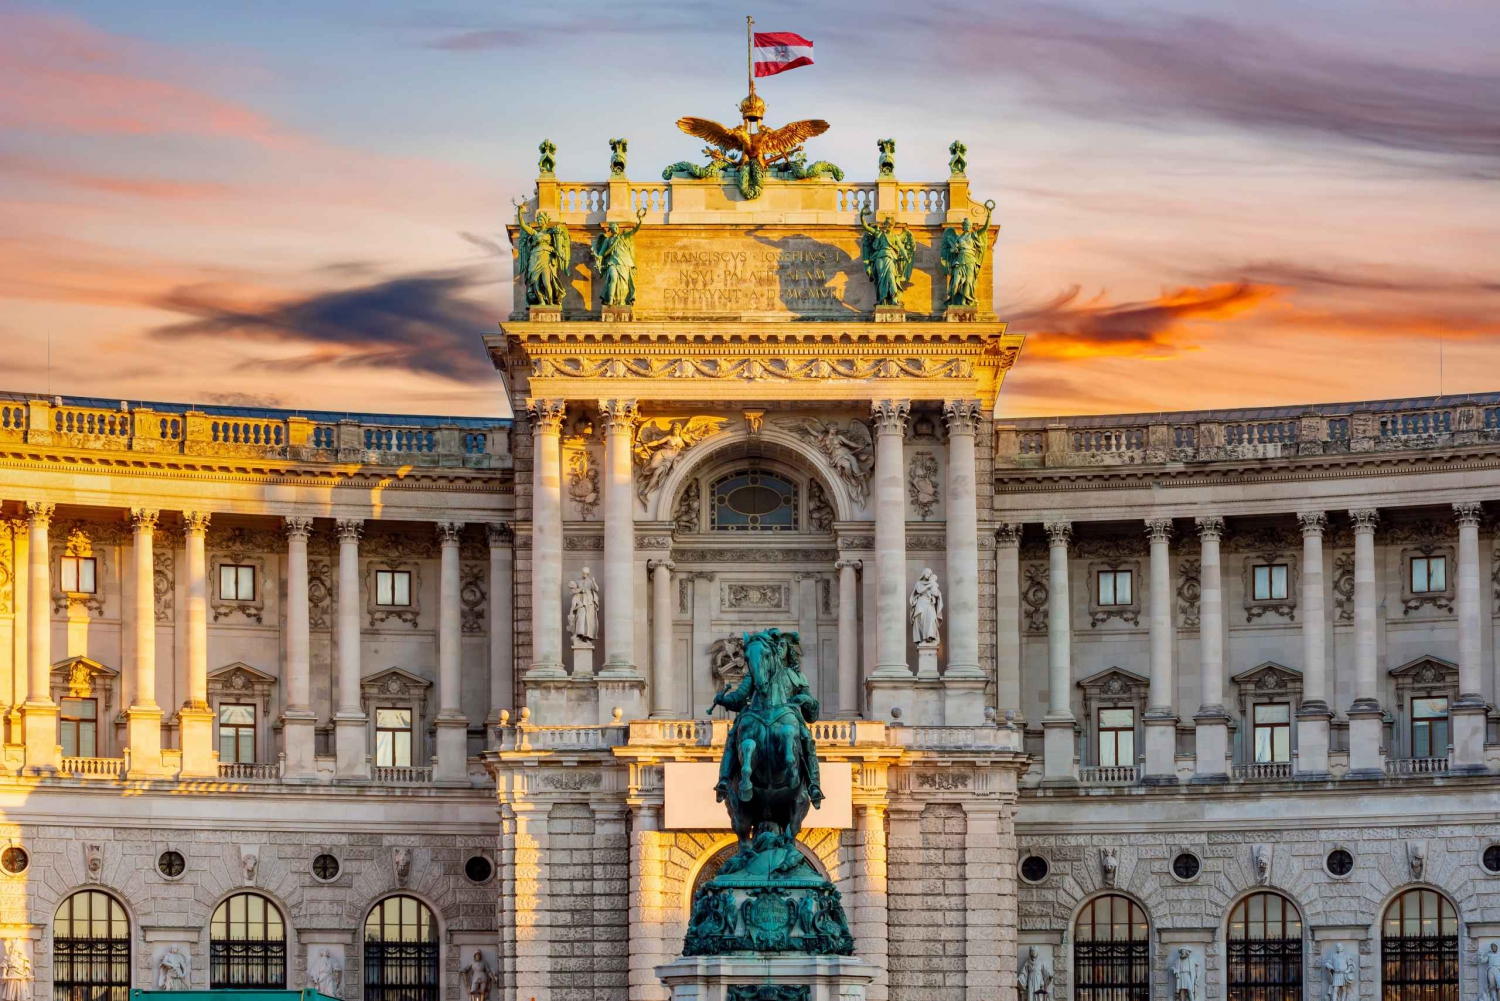 Viena: Visita sin colas al Museo de Sisi, Hofburg y Jardines